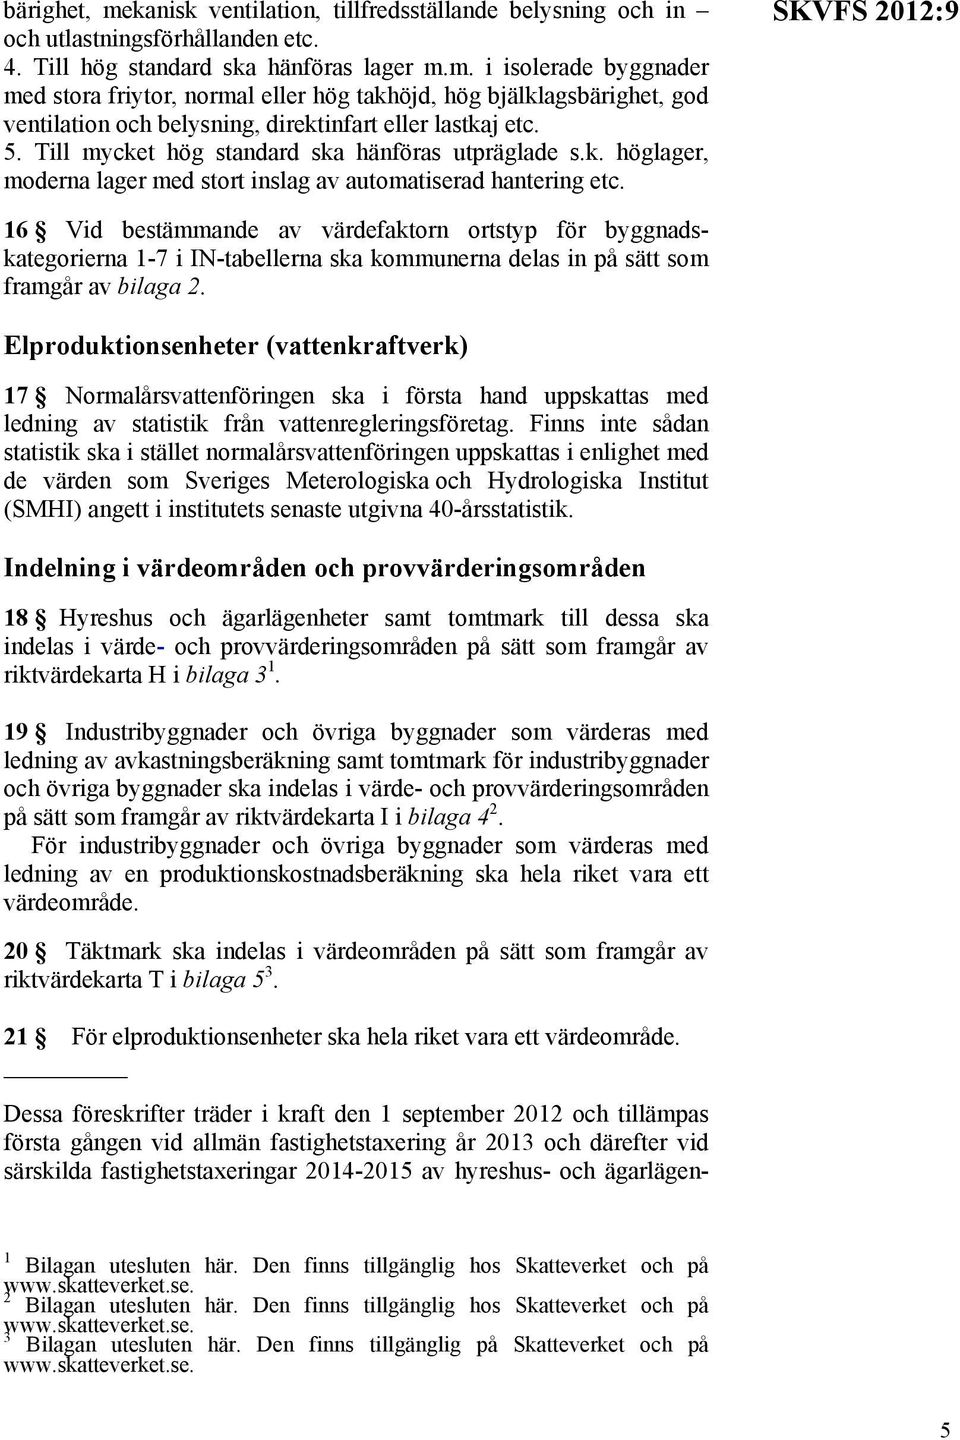 SKVFS 2012:9 16 Vid bestämmande av värdefaktorn ortstyp för byggnadskategorierna 1-7 i IN-tabellerna ska na delas in på sätt som framgår av bilaga 2.